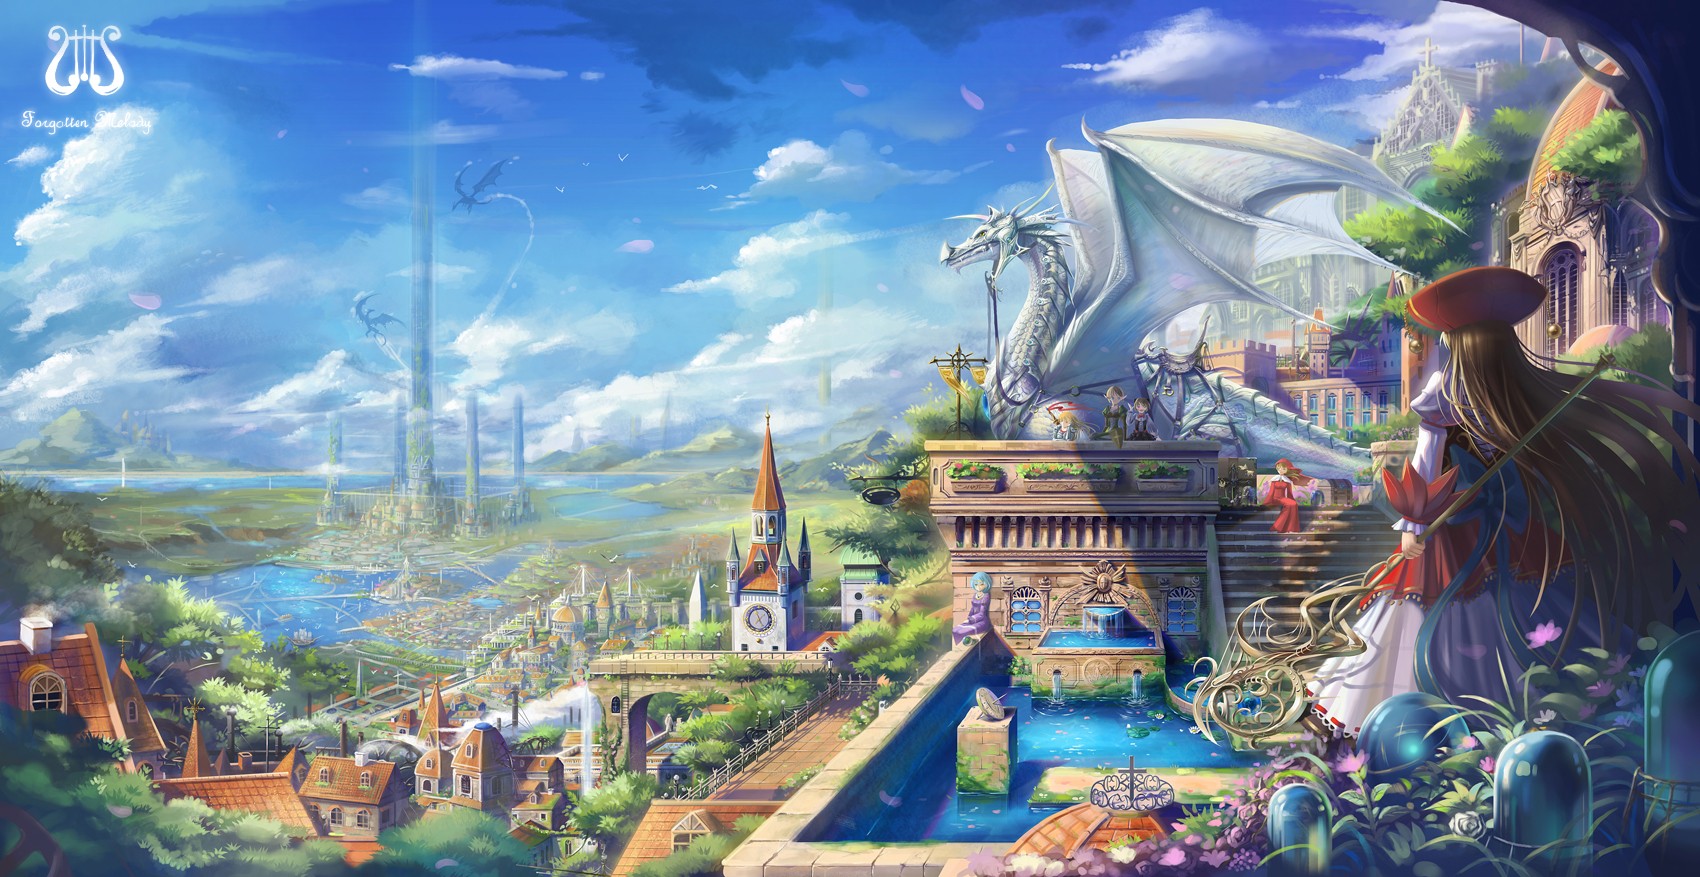 fondo de pantalla de tema anime,juego de acción y aventura,juegos,juego de pc,cg artwork,mitología